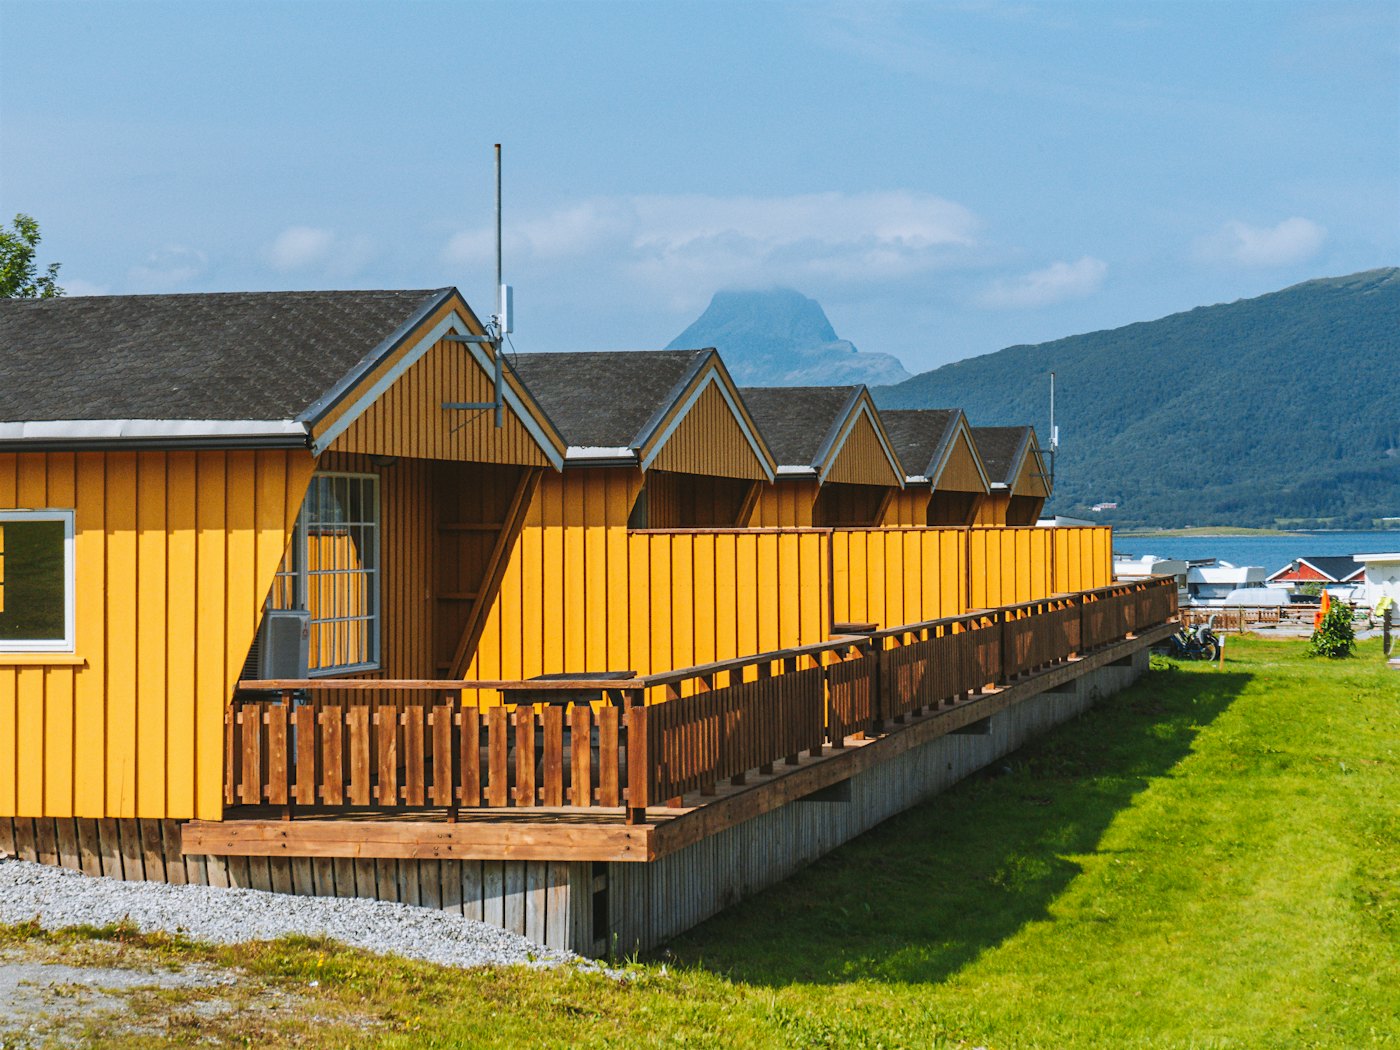 Äußeres von fünf gelben Cottages mit Terrasse. Grüner Rasen davor und Berge im Hintergrund. Foto